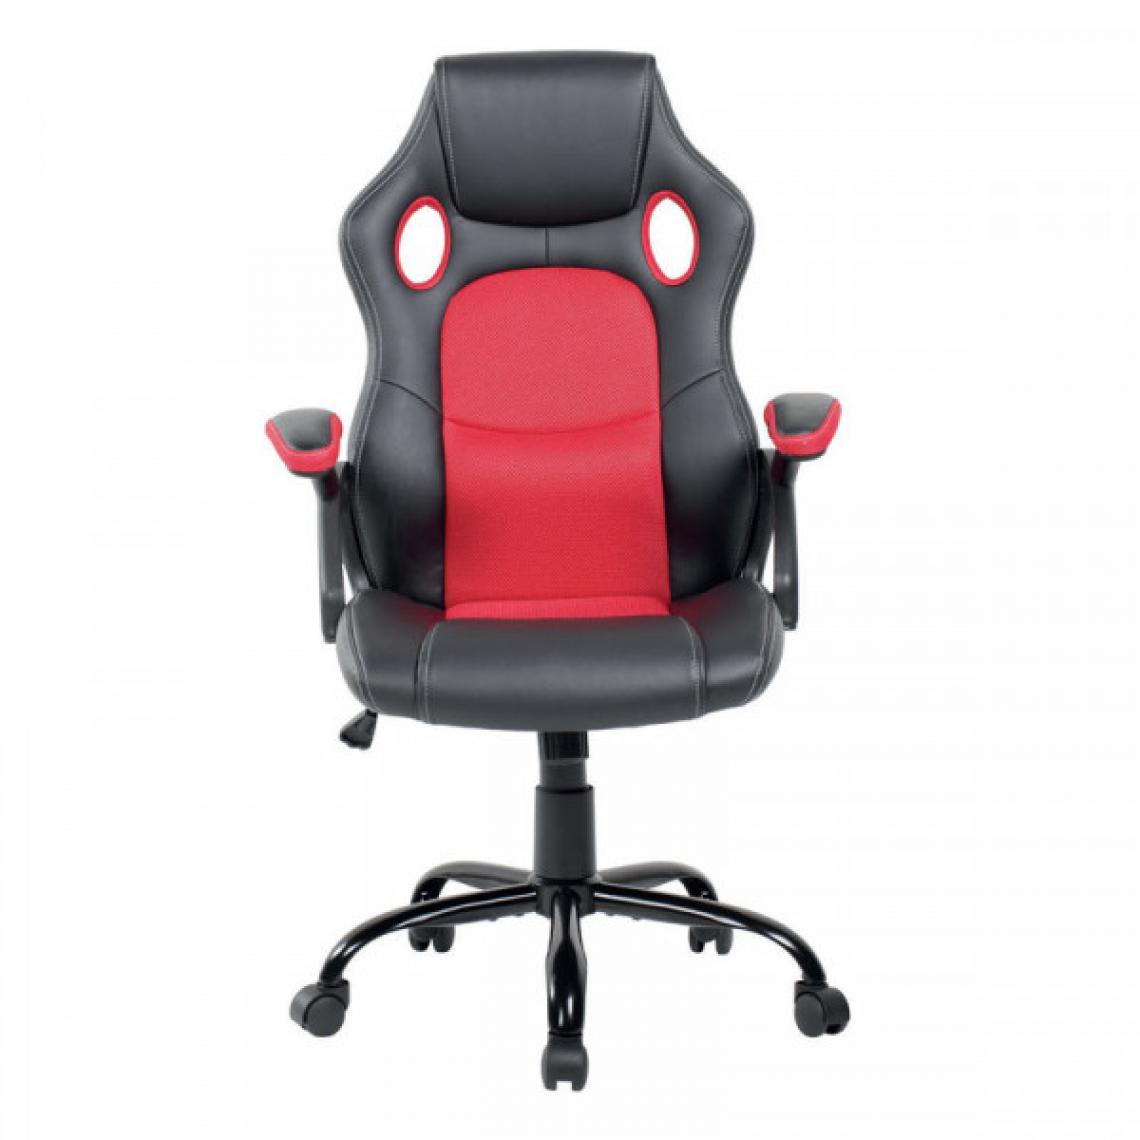 Dansmamaison - Chaise de bureau gamer Noir/Rouge - JOGO - L 66 x l 53 x H 121 cm - Bureaux